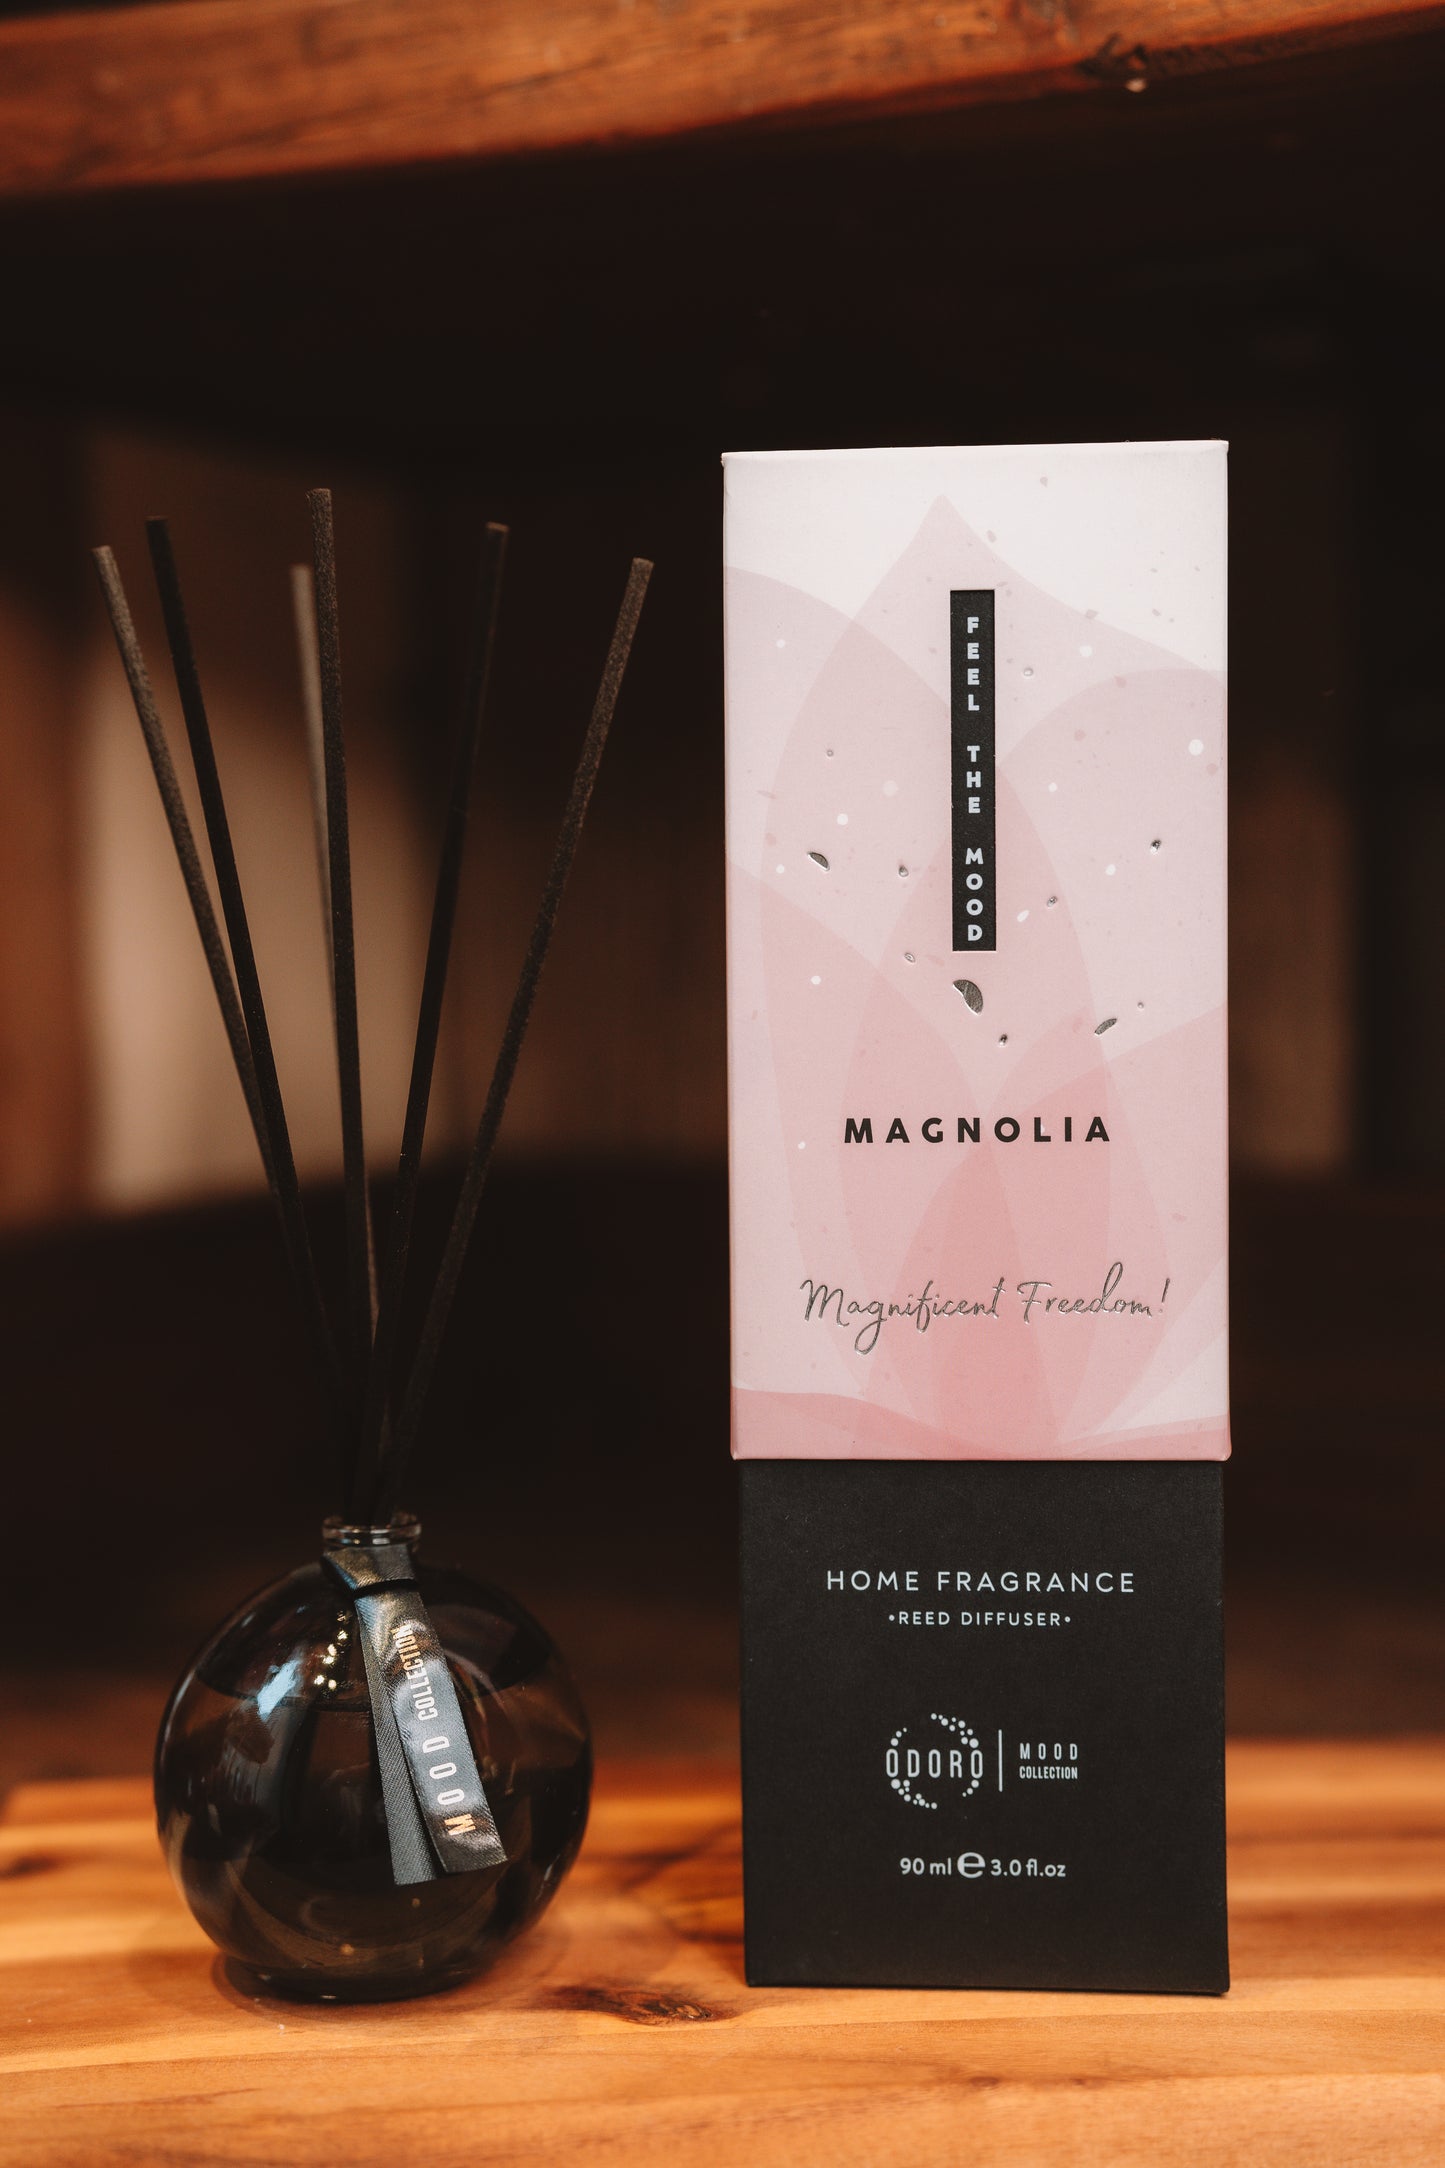 Home fragrance Odoro Mood Magnolia Magnolia